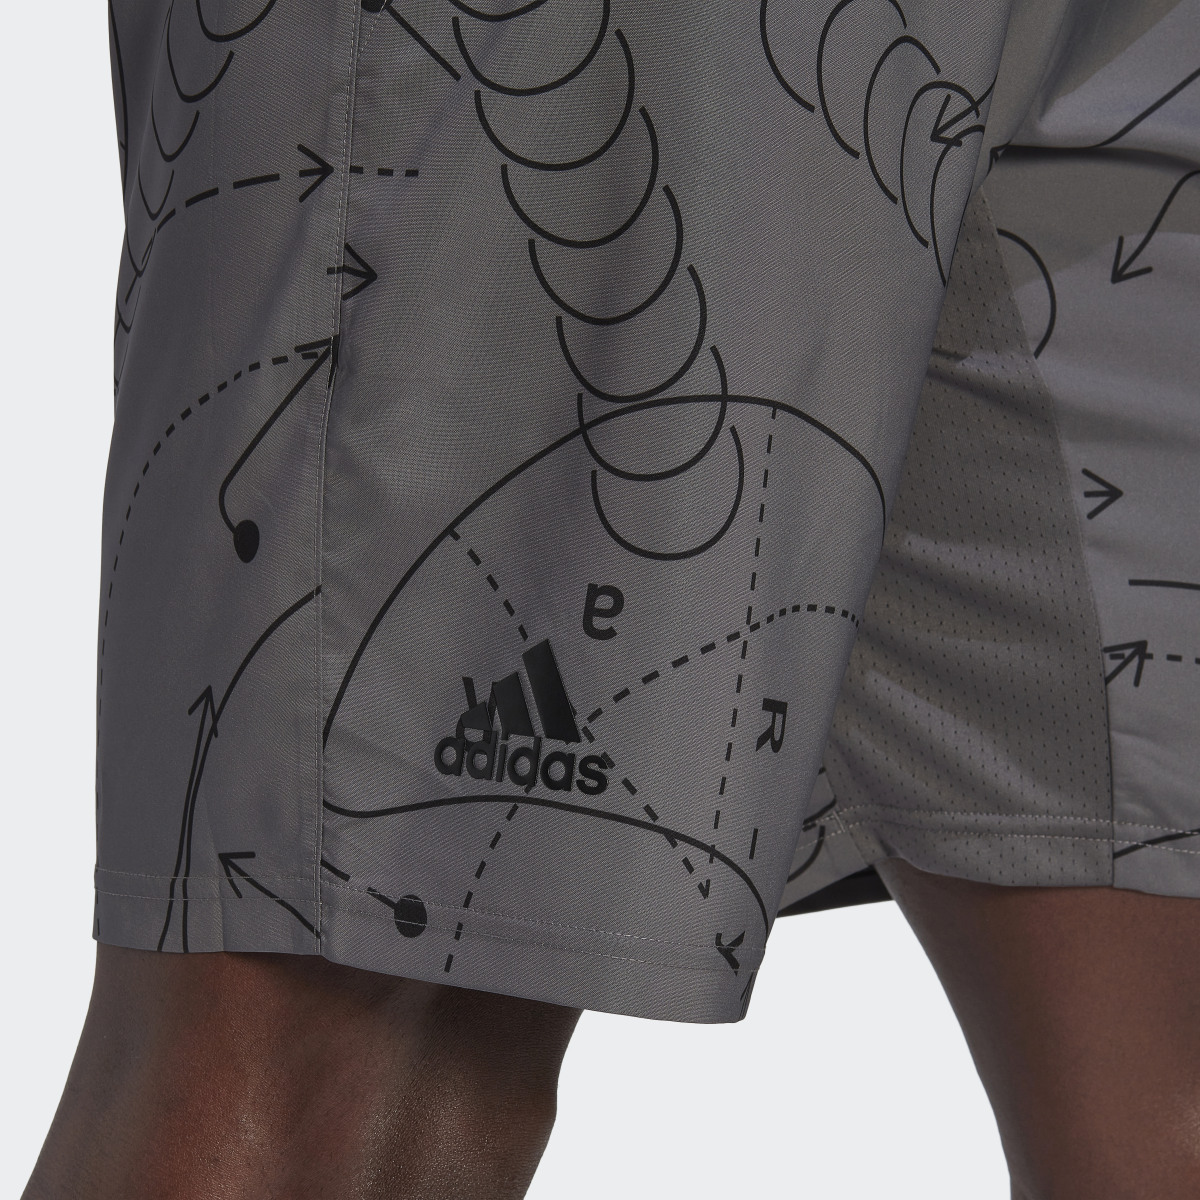 Adidas Club Graphic Tennis Shorts. 5